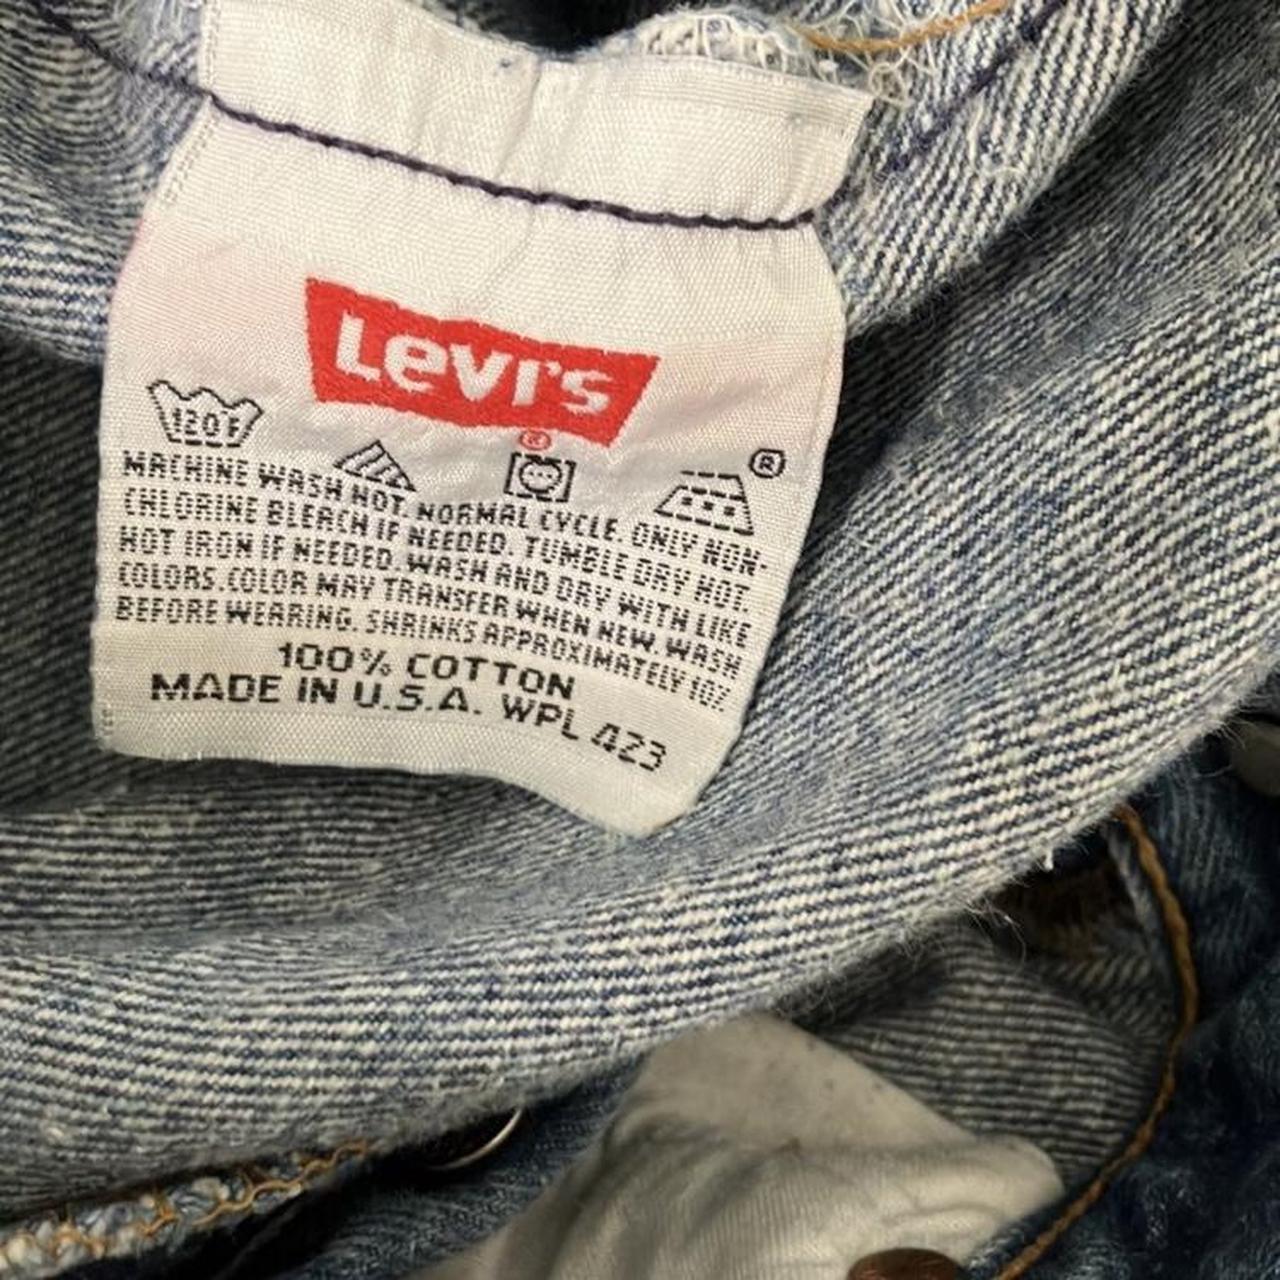 Rare Tiny Size Vintage Levis Levi 501 Jeans Size... - Depop